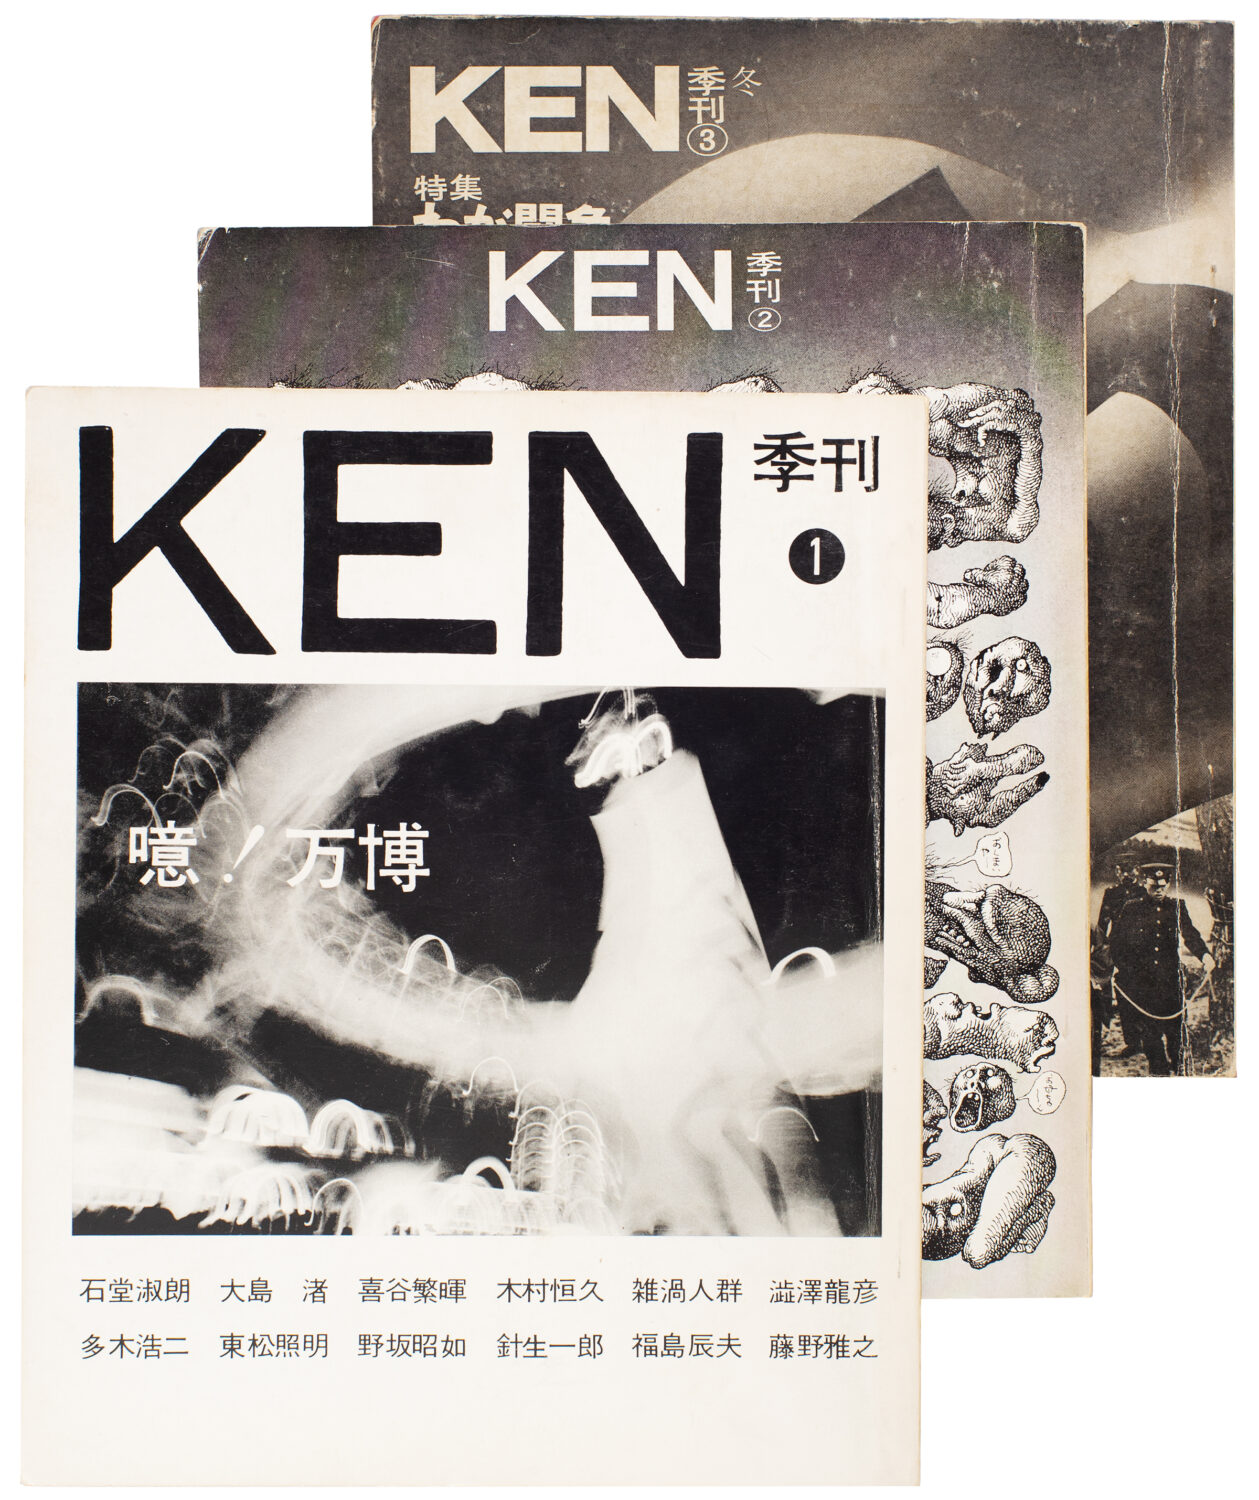 Ken1.1